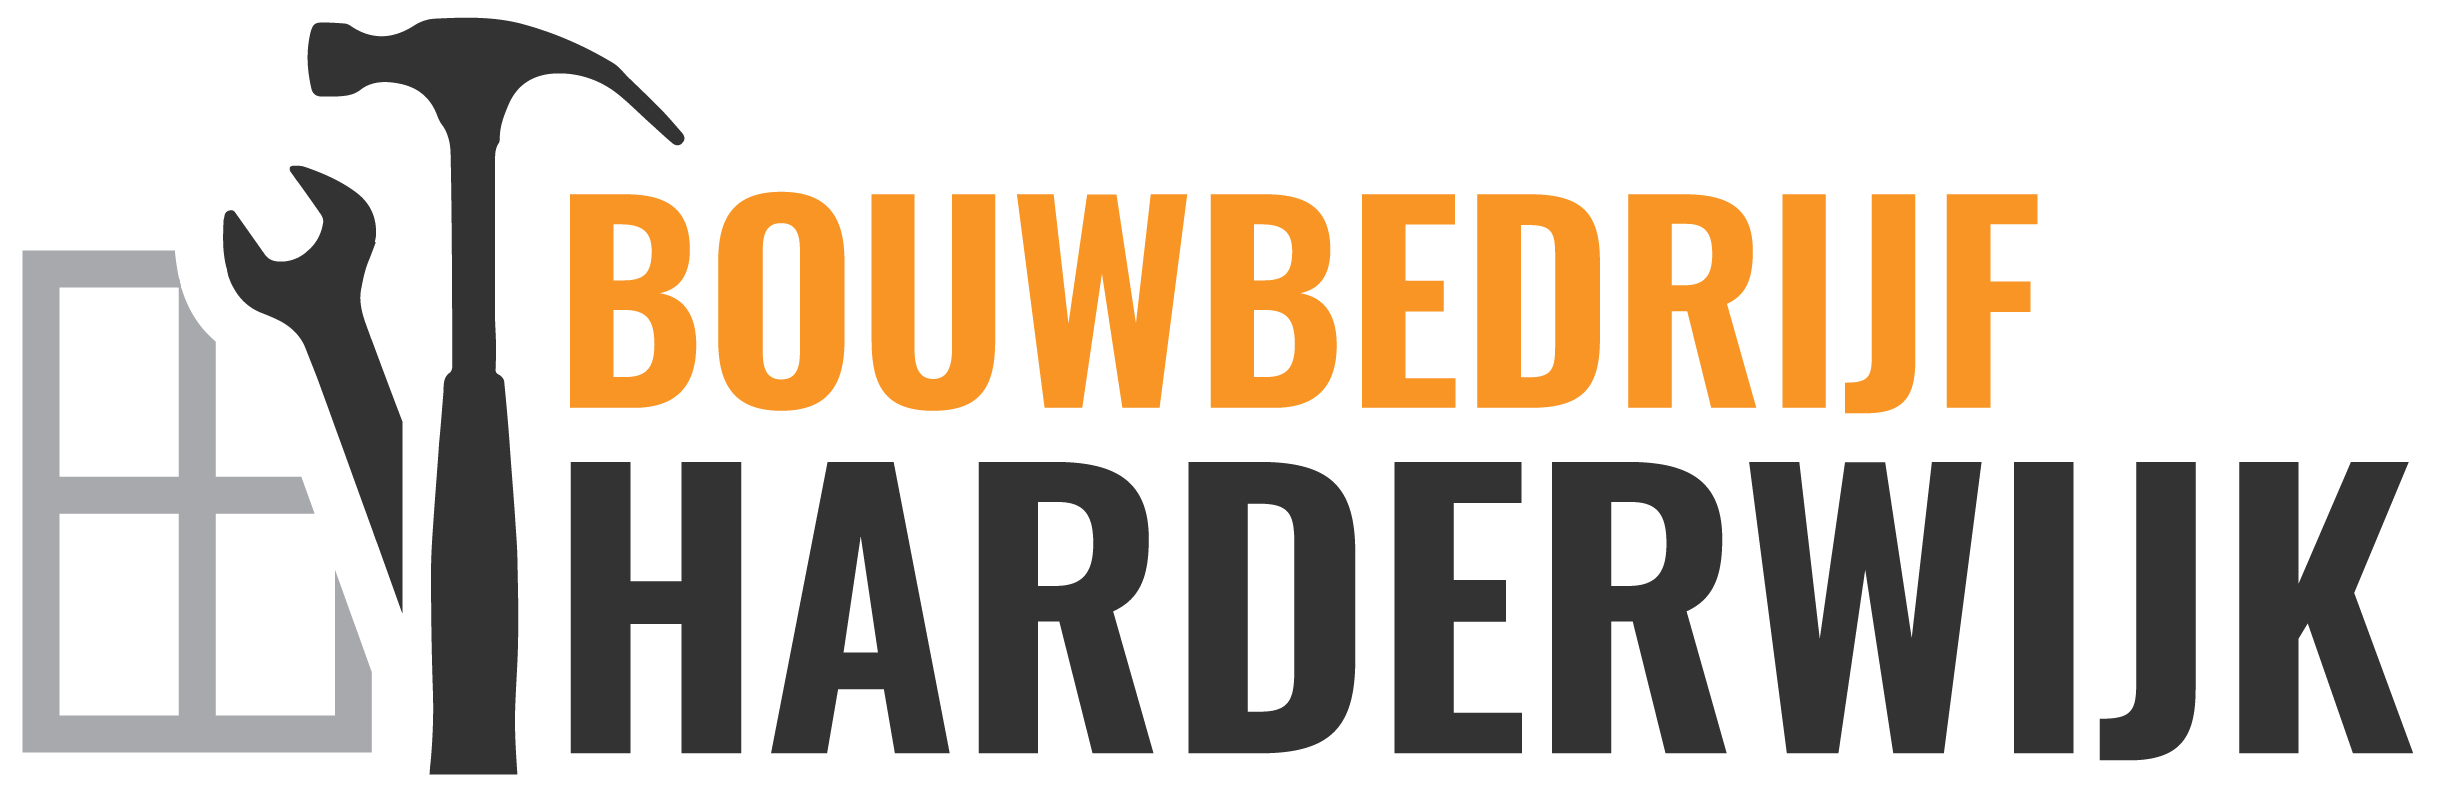 Professioneel timmerbedrijf - Bouwbedrijf Harderwijk, Harderwijk